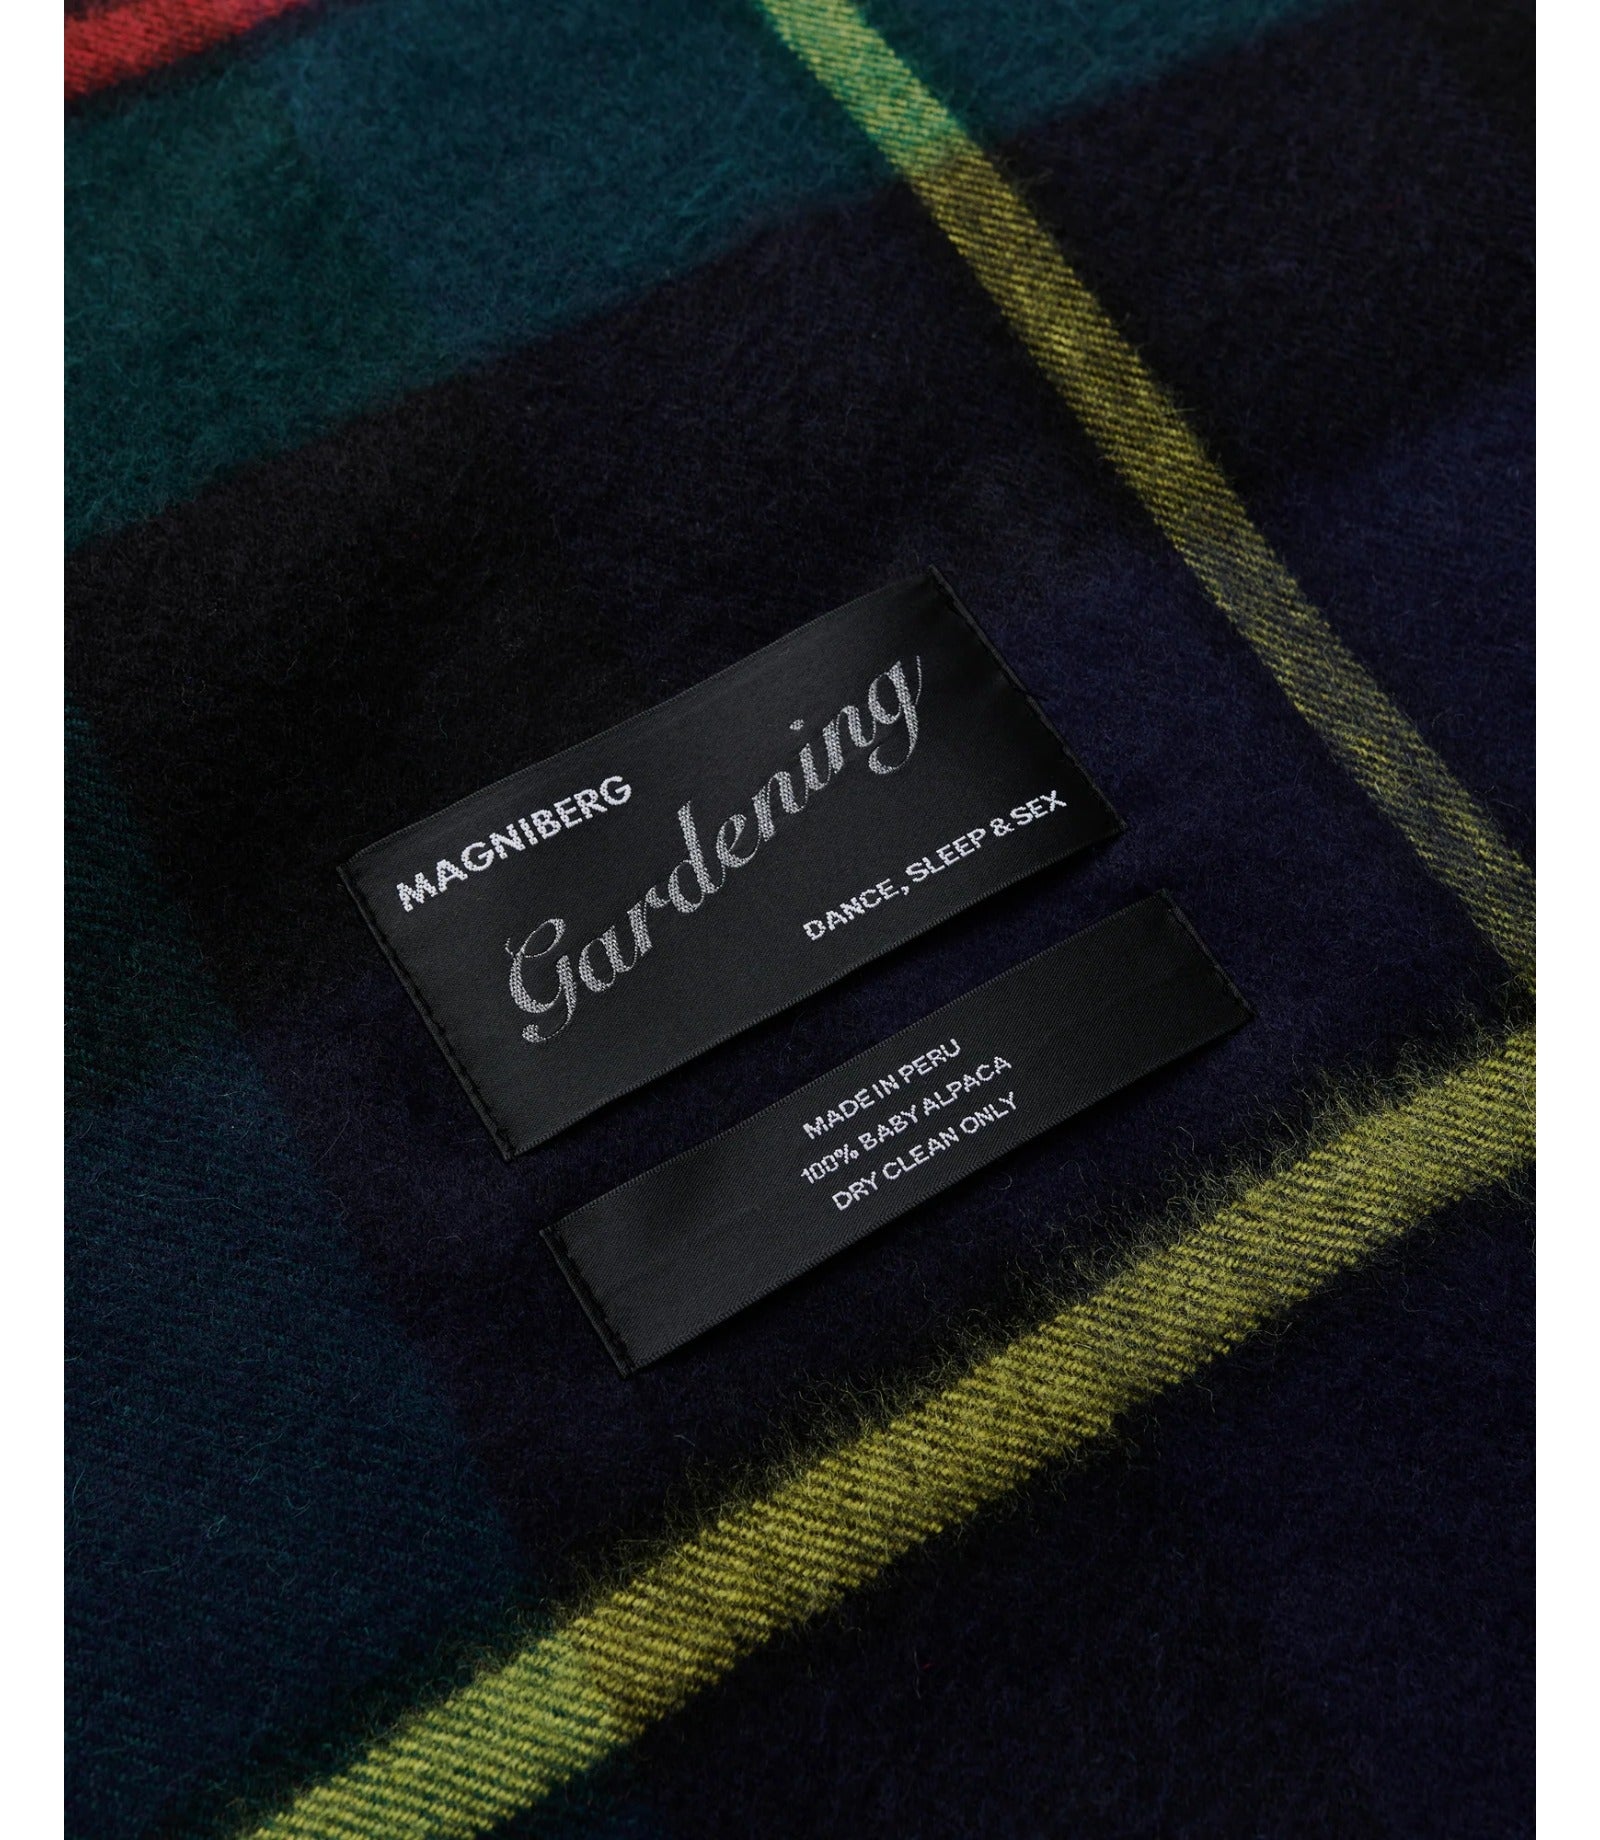 Magniberg - Queen Blanket, Scottish Green